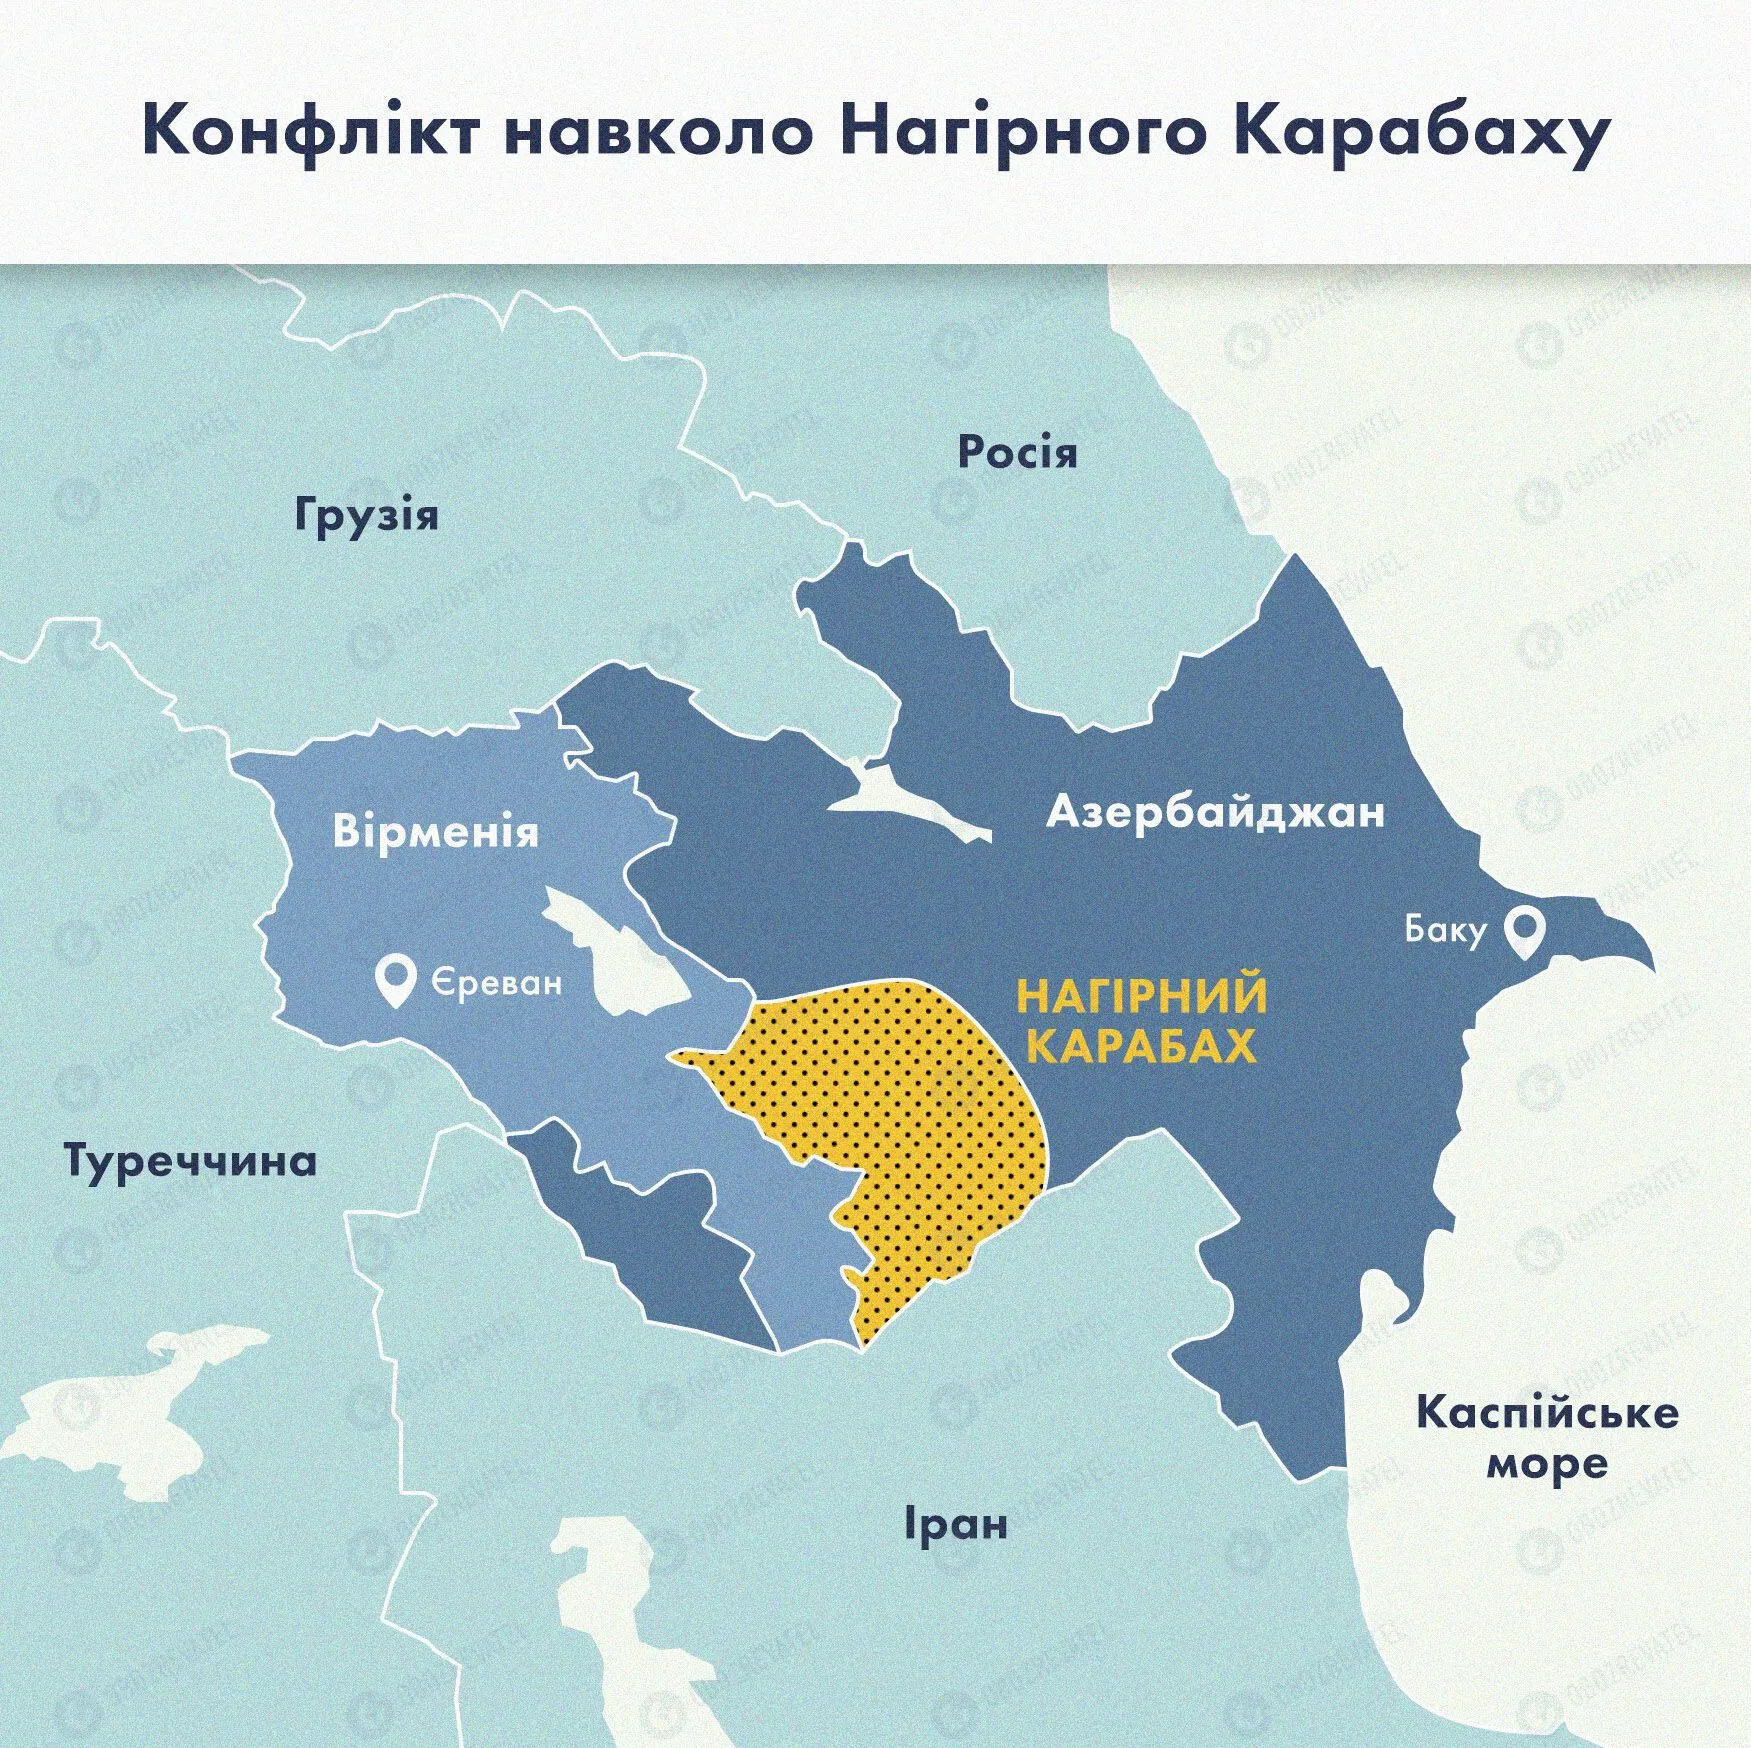 Карта конфликта